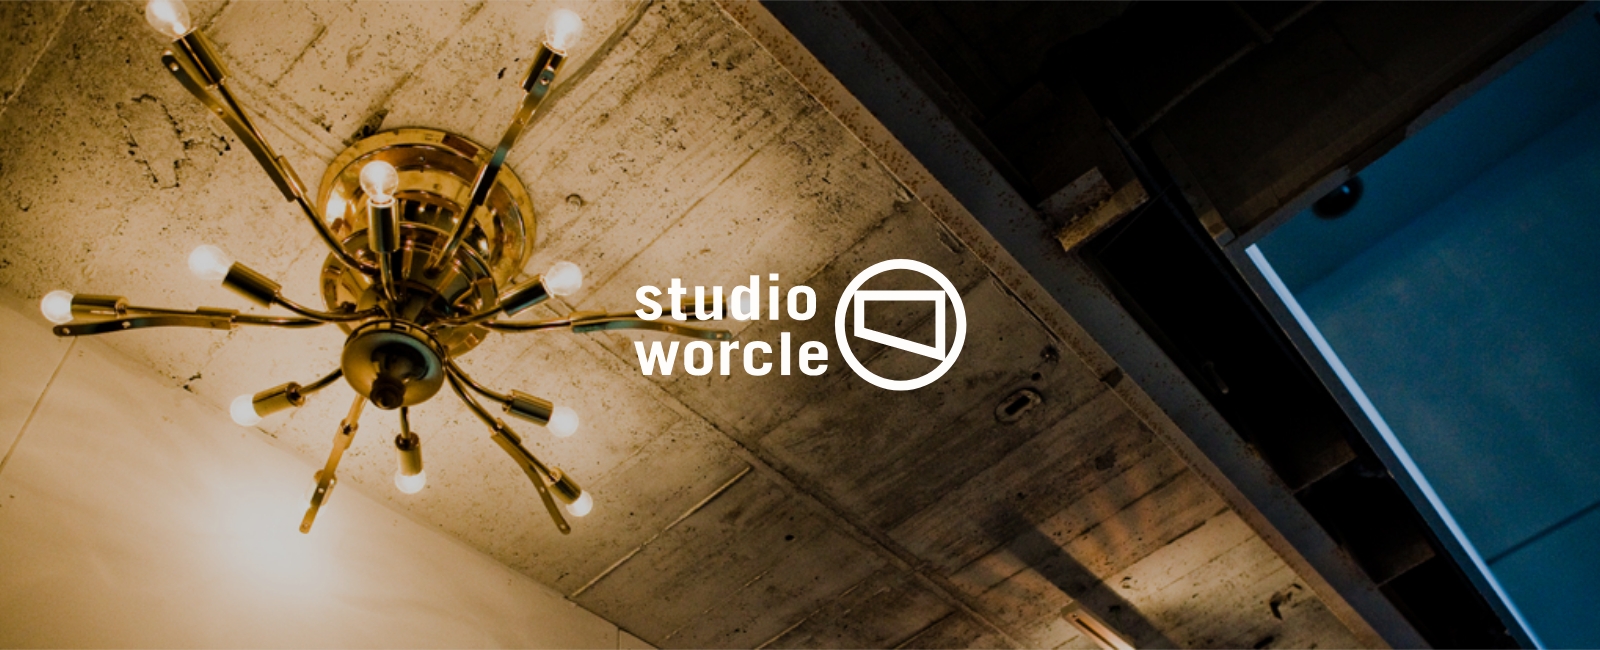 studio-worcle